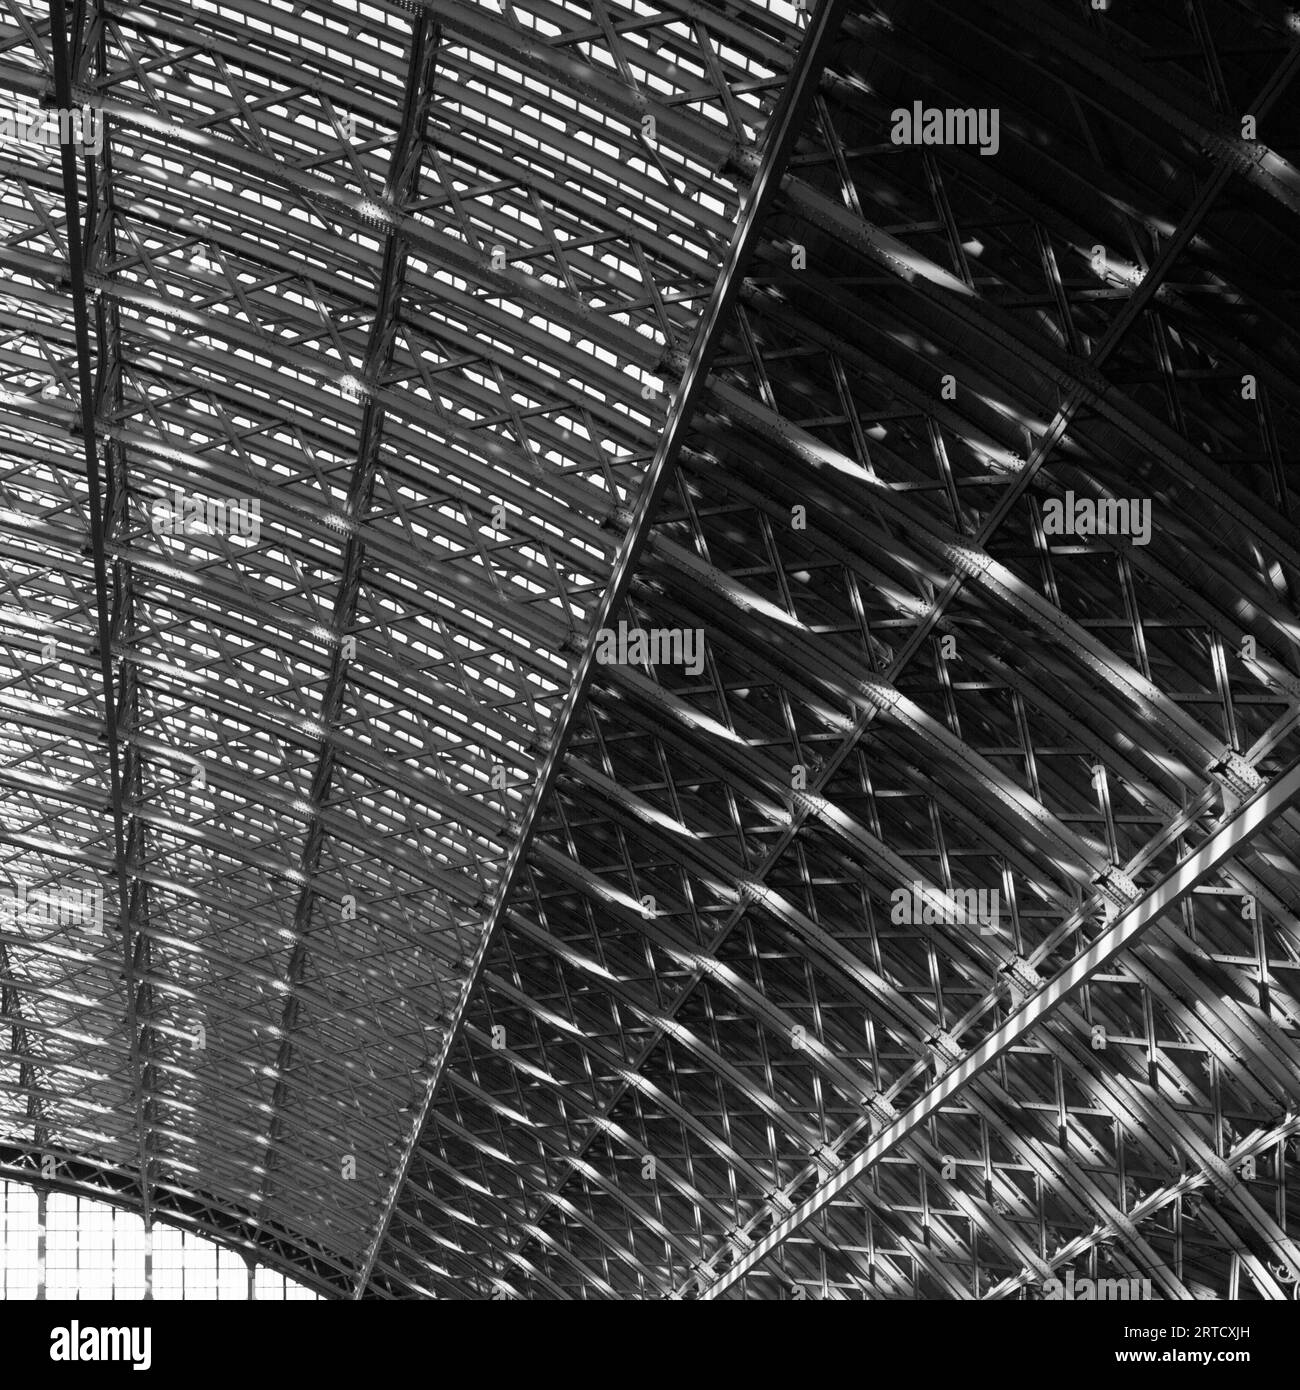 Le Single Span Arqué Roof de la gare de Saint Pancras en fer forgé et vitré, Londres Angleterre Royaume-Uni Banque D'Images